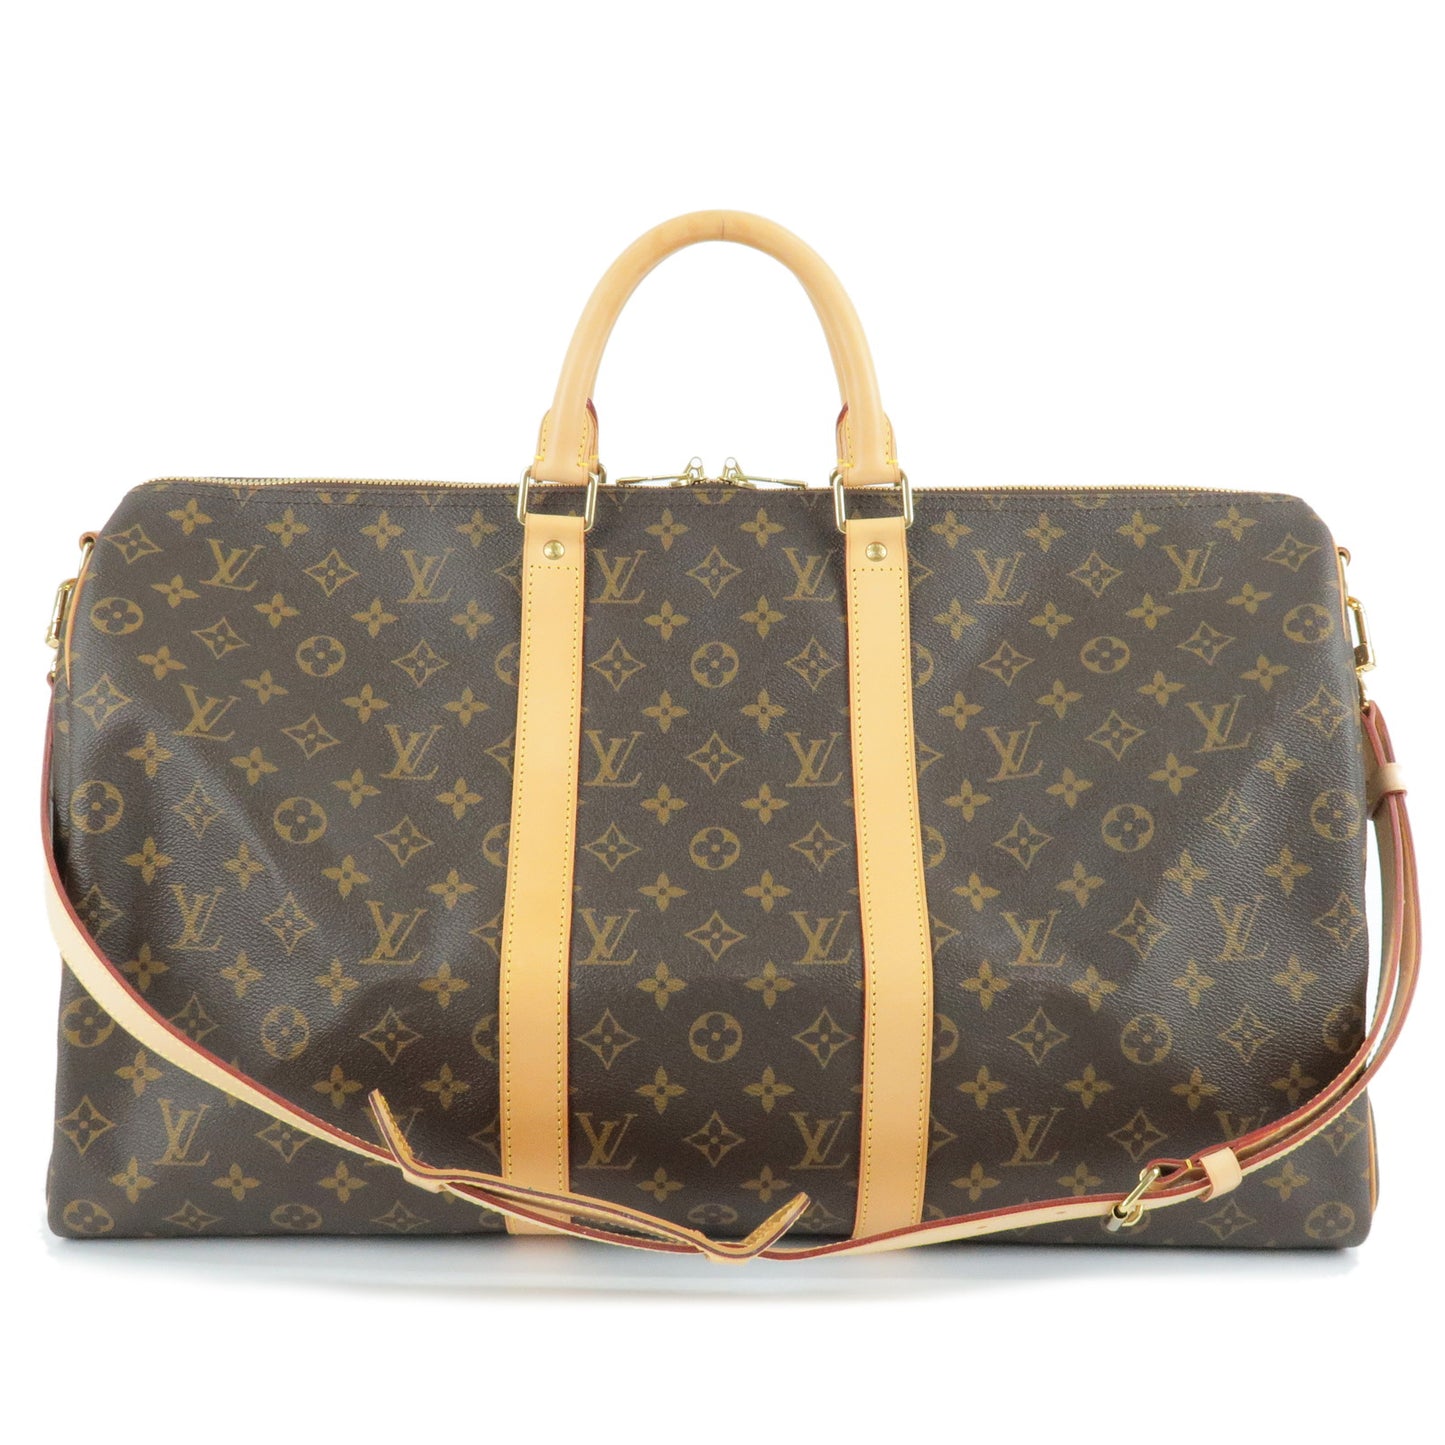 Louis-Vuitton-Monogram-Keep-All-Bandouliere-50-Bag-N41416